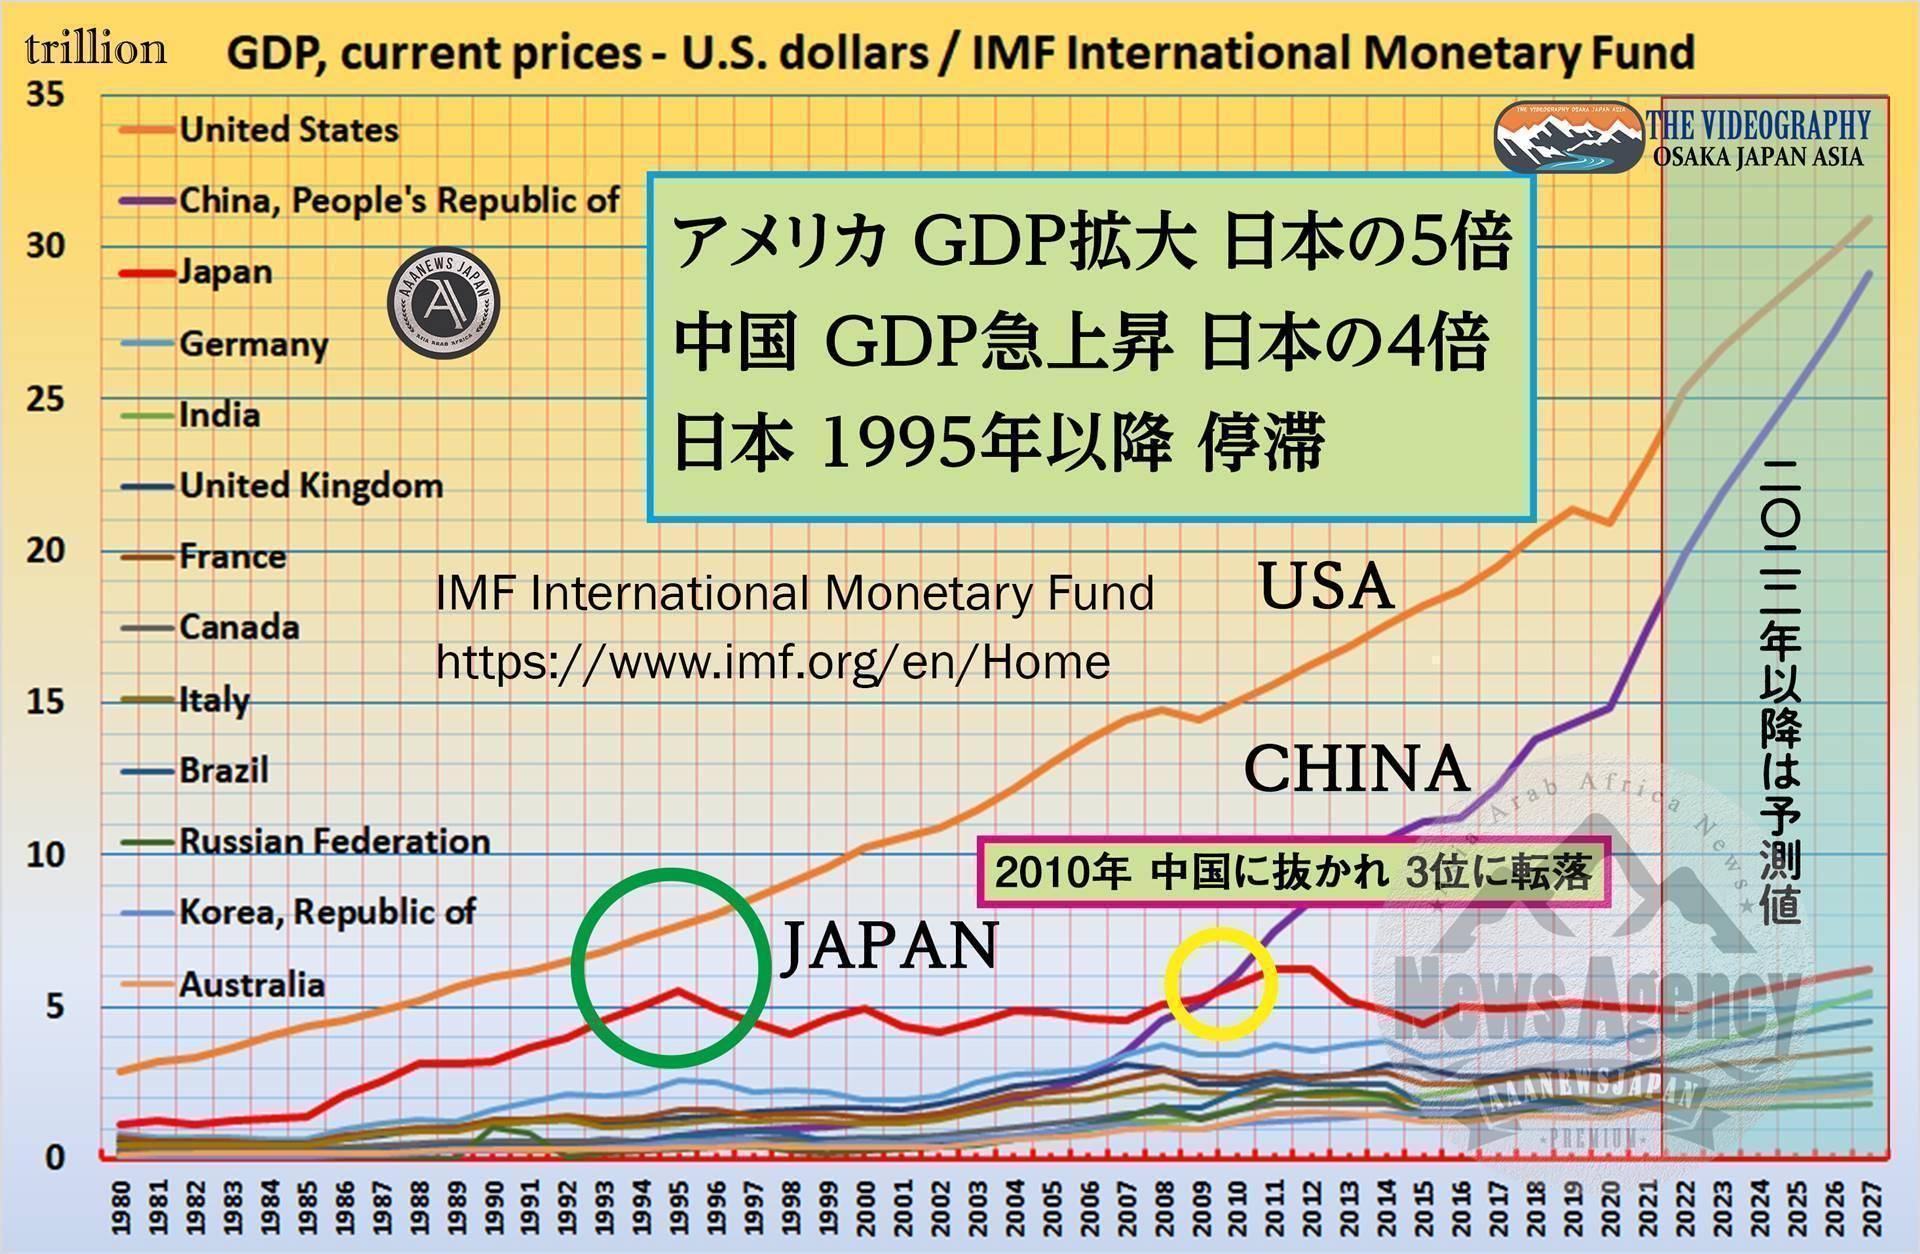 アメリカのGDP 日本の5倍・中国のGDP 日本の4倍・日本は1995年以降 成長停滞・各国のGDP推移・IMF International Monetary Fund 国際通貨基金・他国は30年でGDPを倍以上に増やしているが、日本は1.53倍（ドルベース）のみの成長